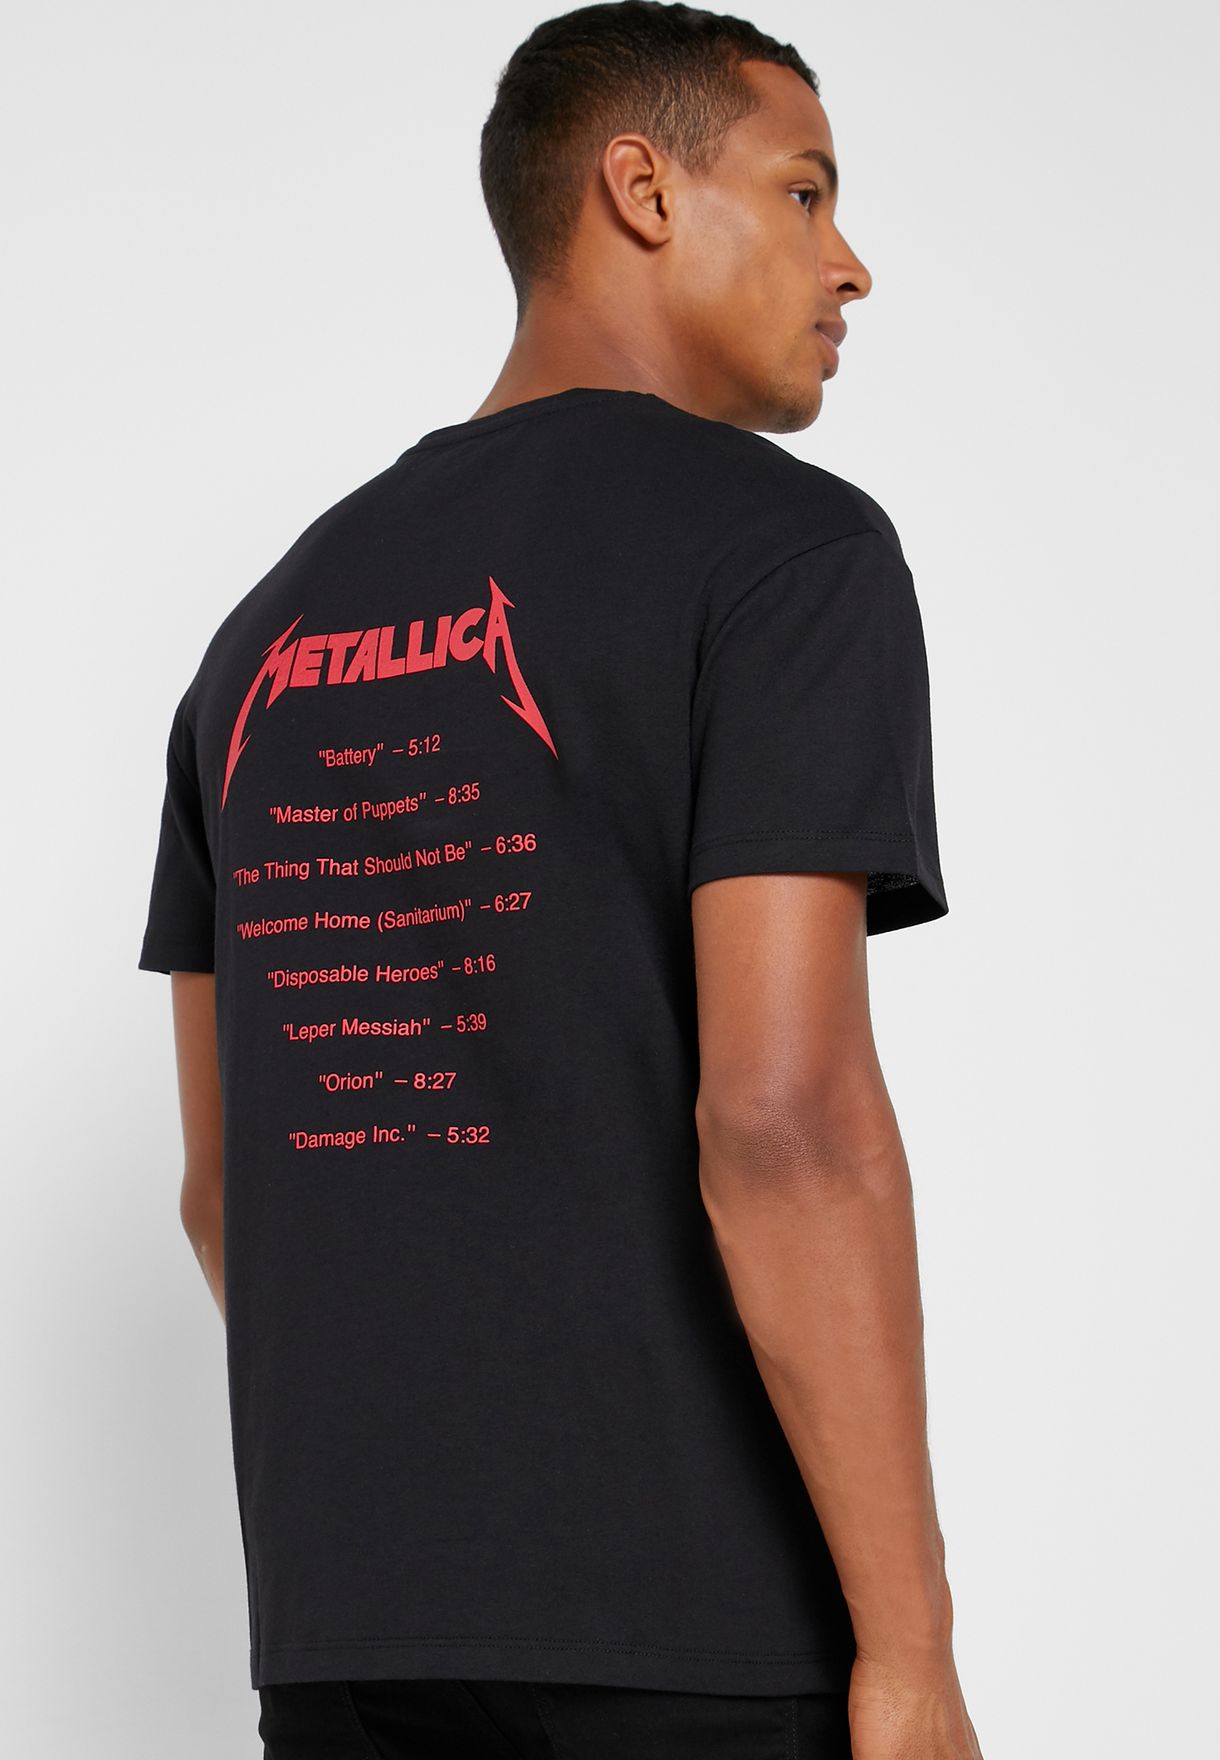 metallica crew neck sweatshirt